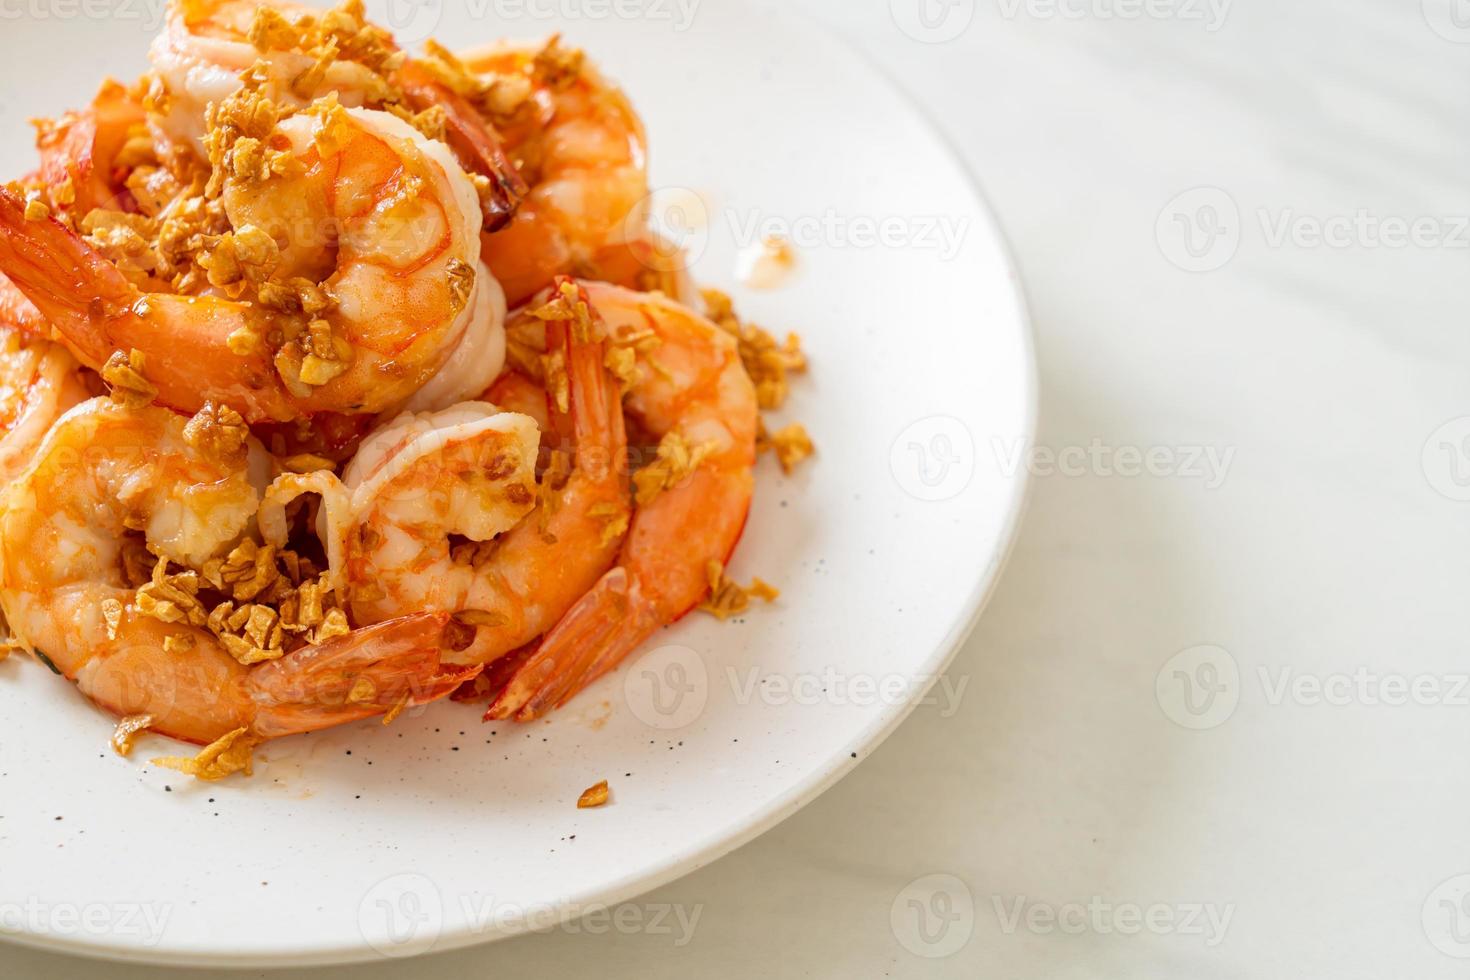 Camarones fritos o gambas con ajo en un plato blanco - estilo marisco foto